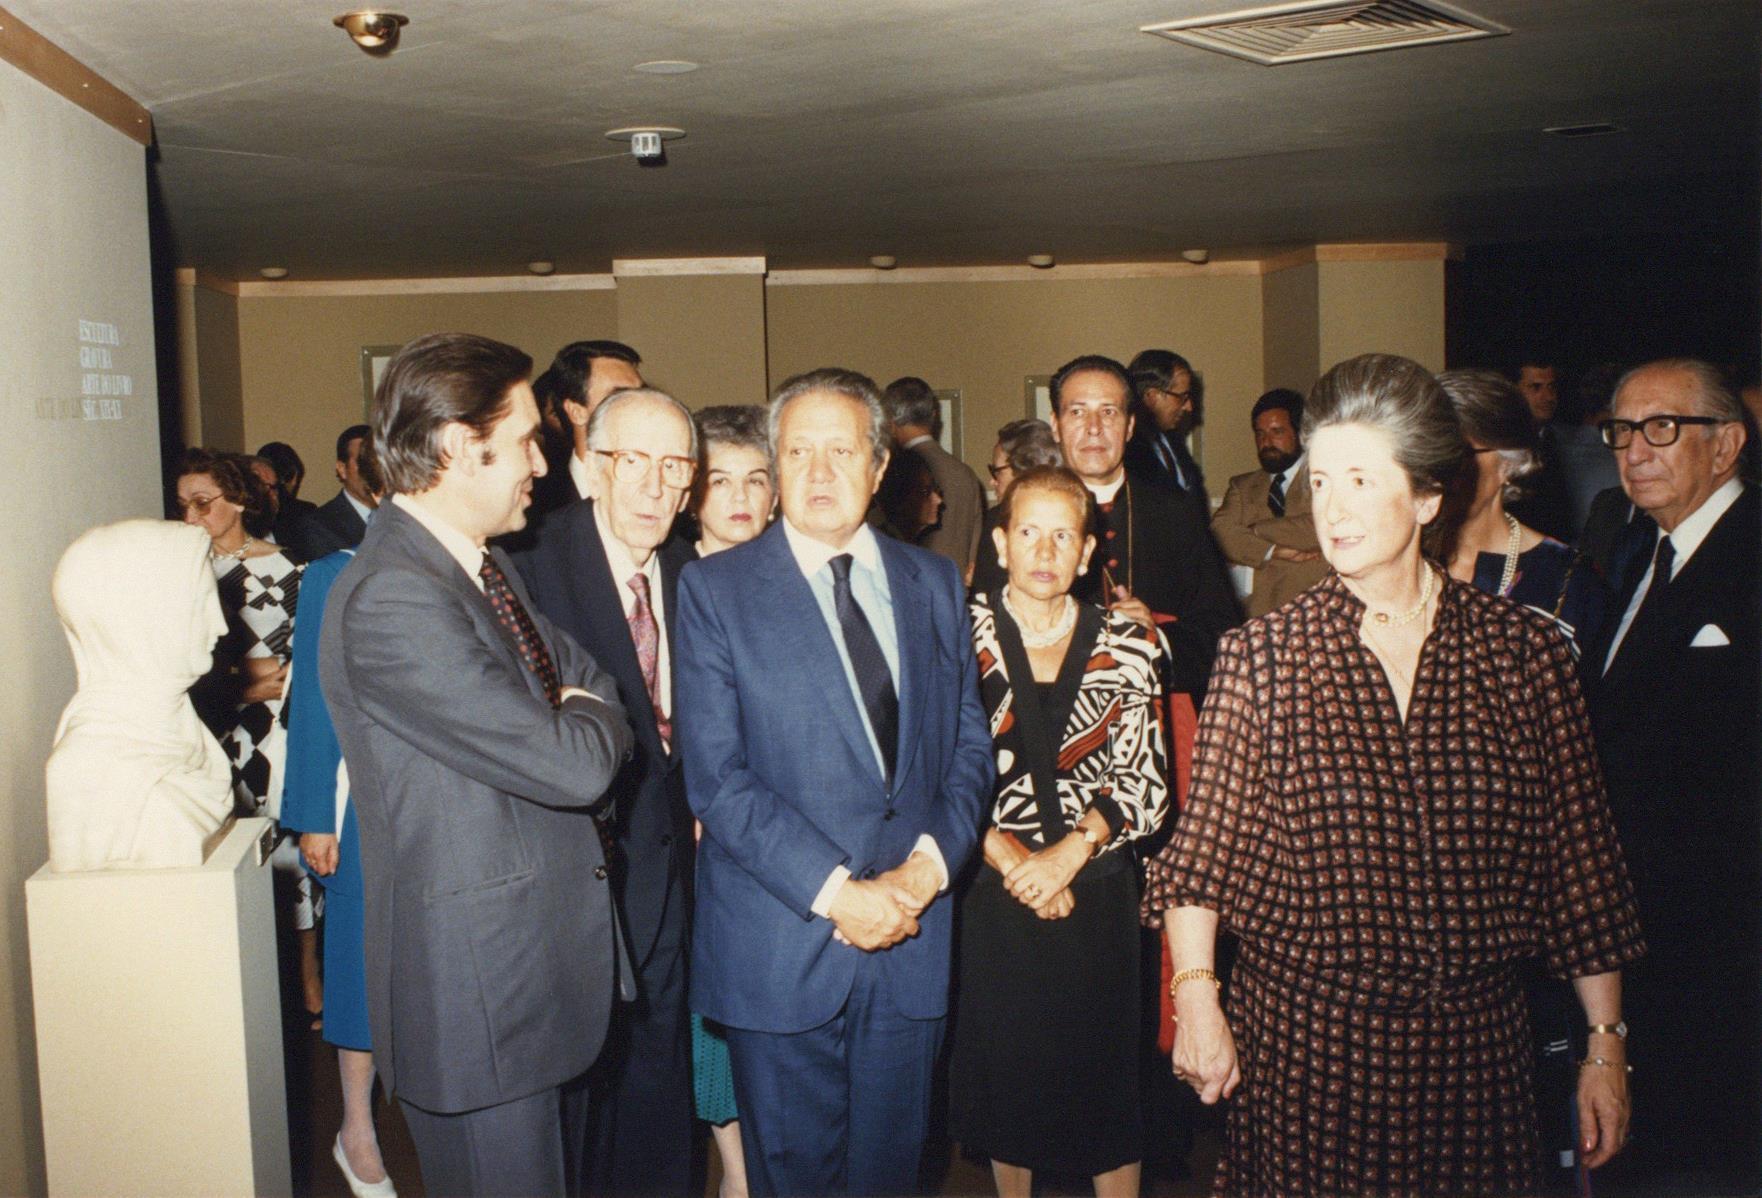 José Blanco, José de Azeredo Perdigão, Mário Soares, Maria Barroso e Maria Teresa Gomes Ferreira (da esq. para a dir.)